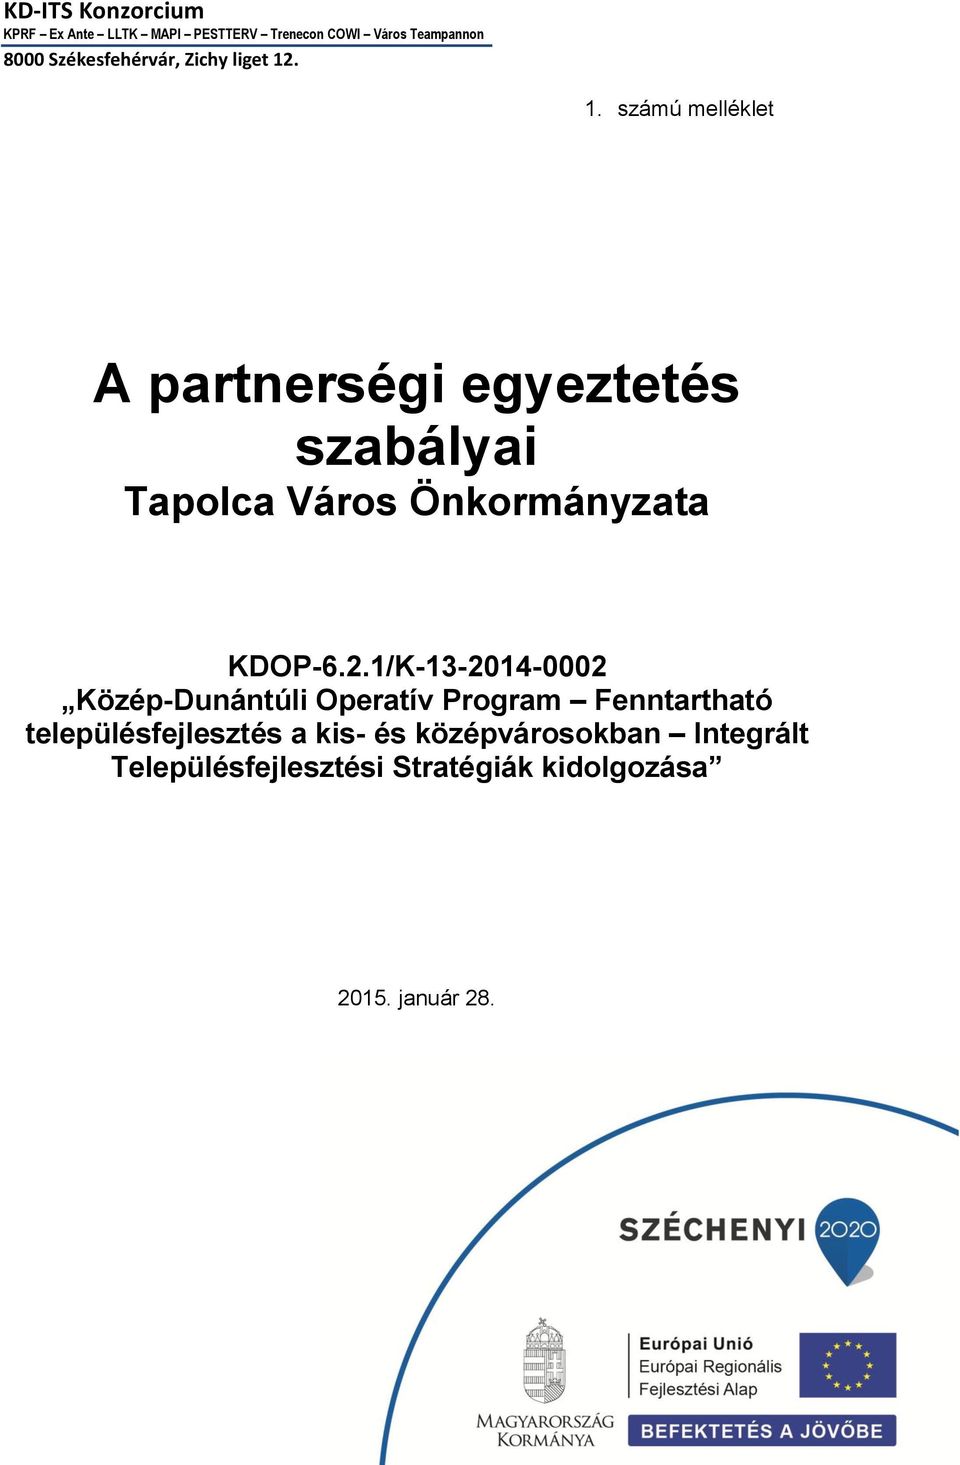 2.1/K-13-2014-0002 Közép-Dunántúli Operatív Program Fenntartható településfejlesztés a